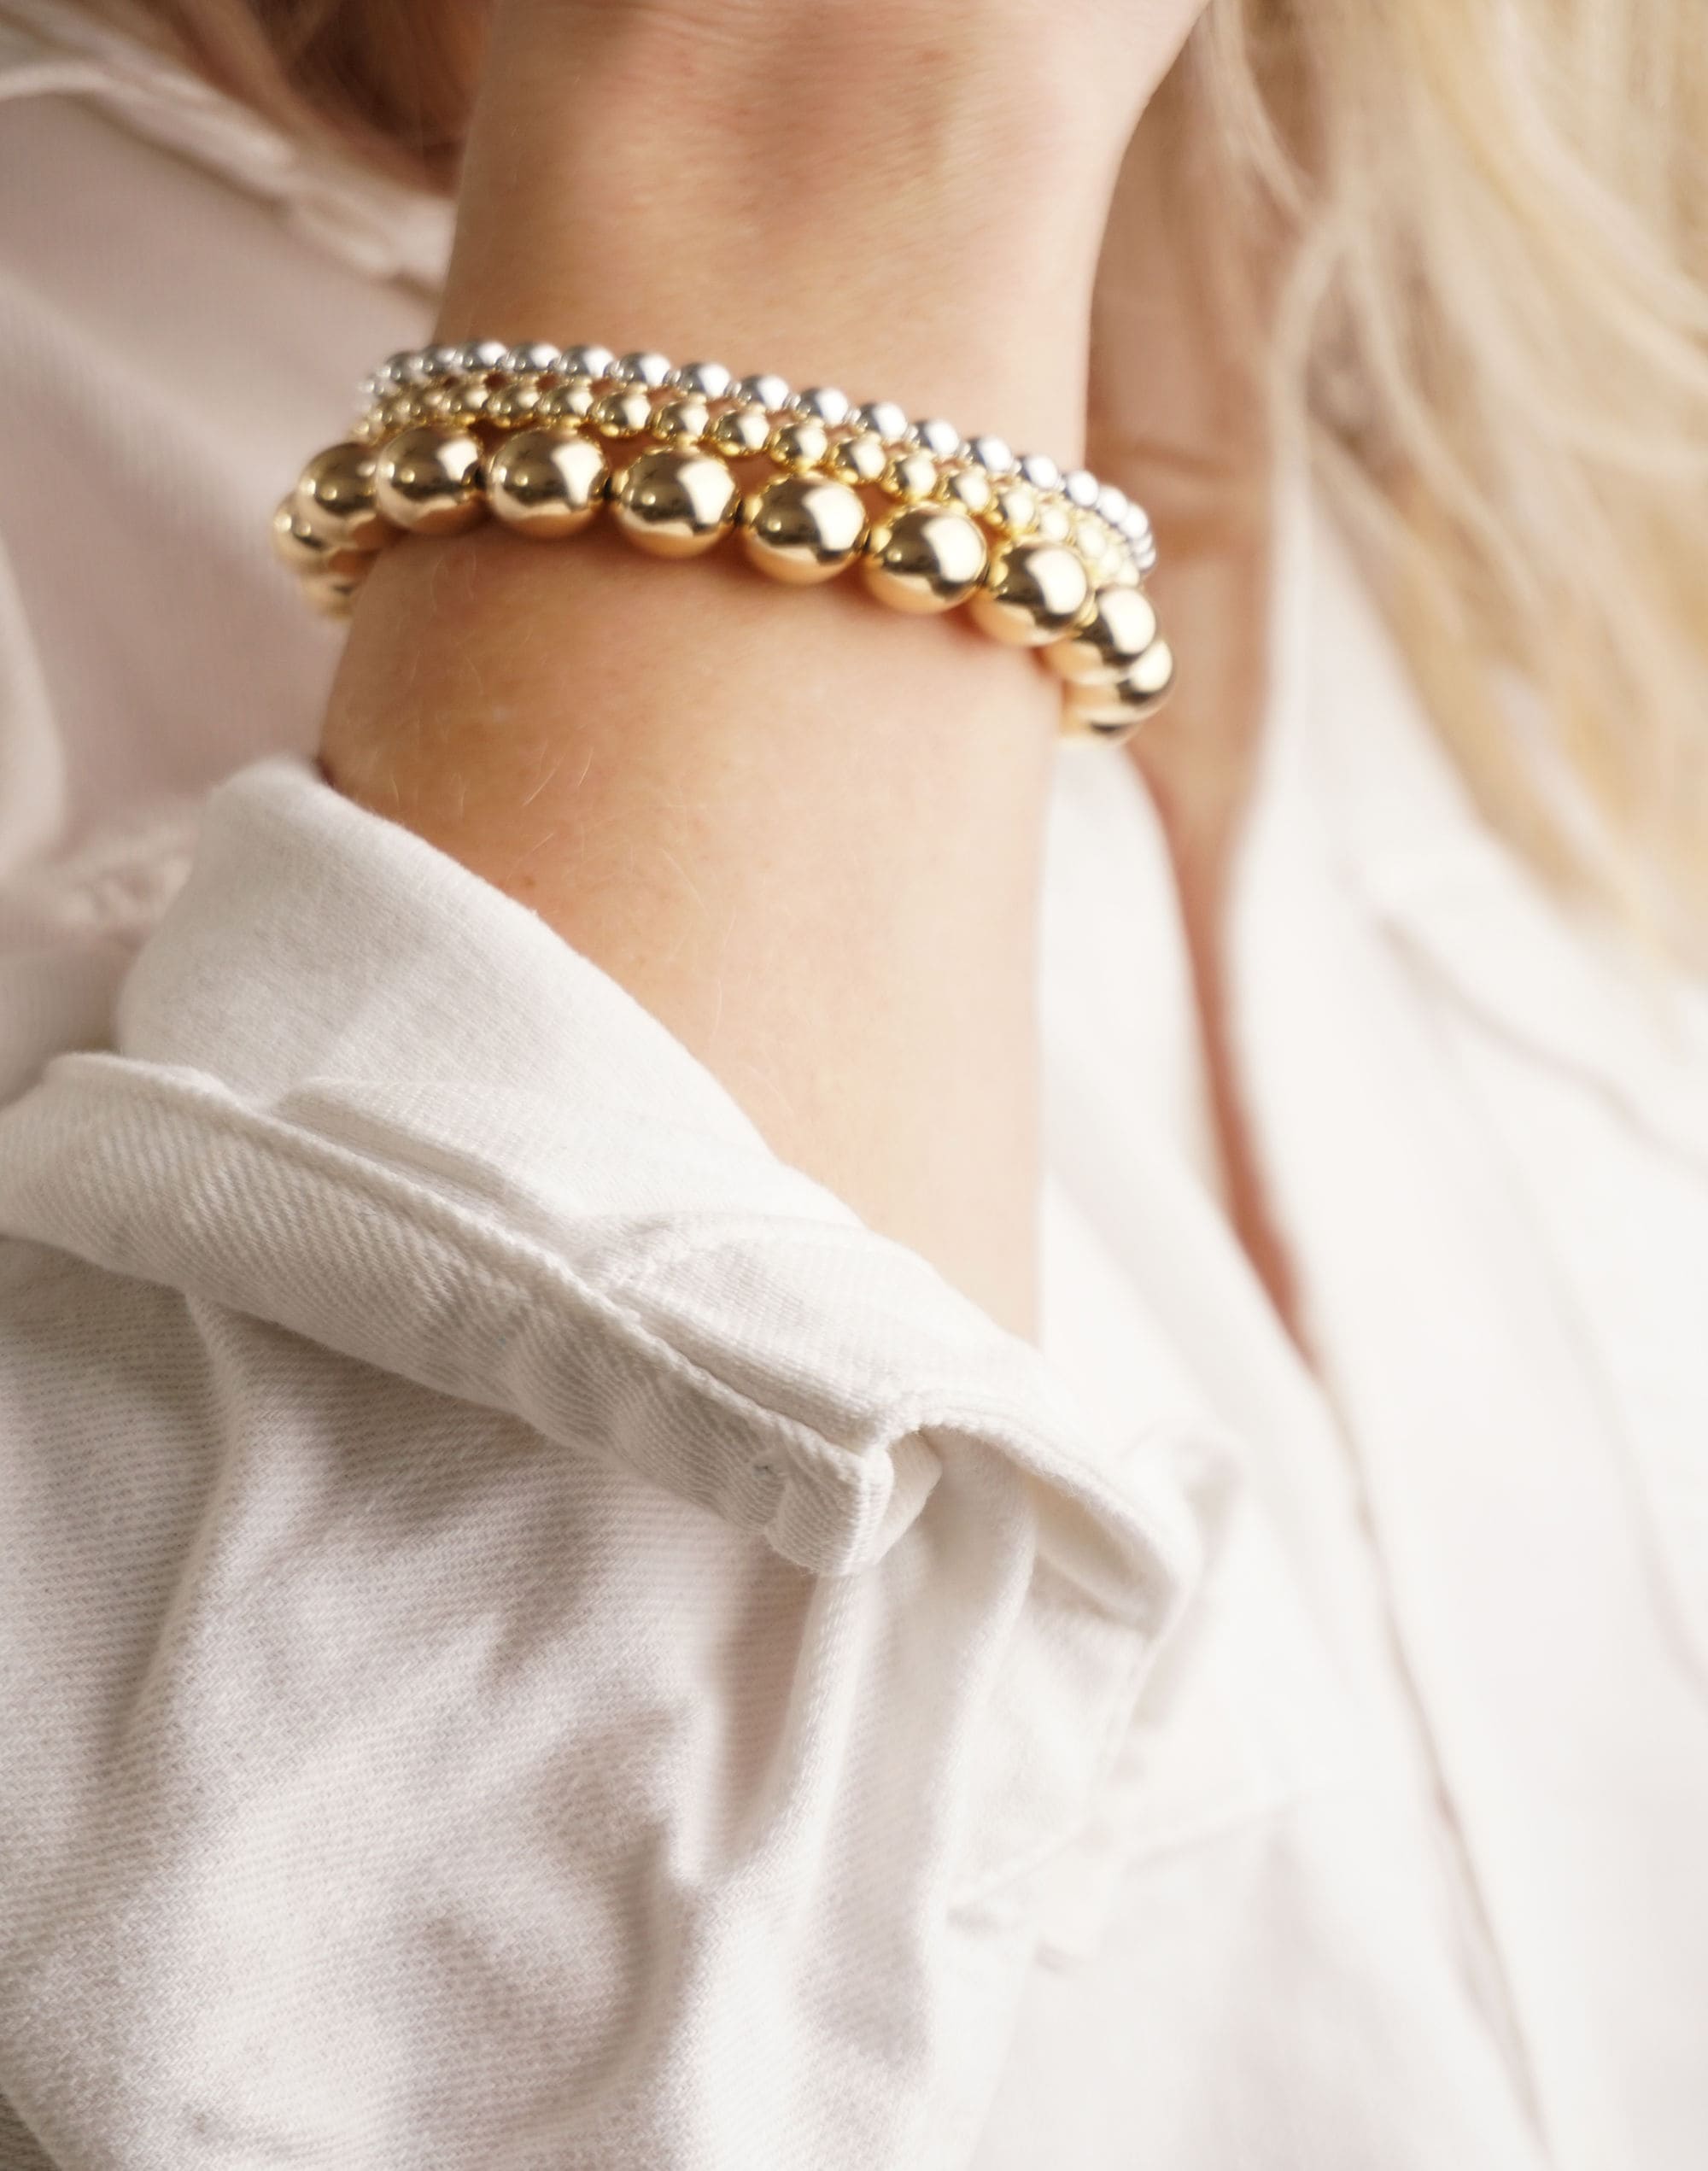 Charlotte Cauwe Studio Bead Bracelet in Gold 5mm